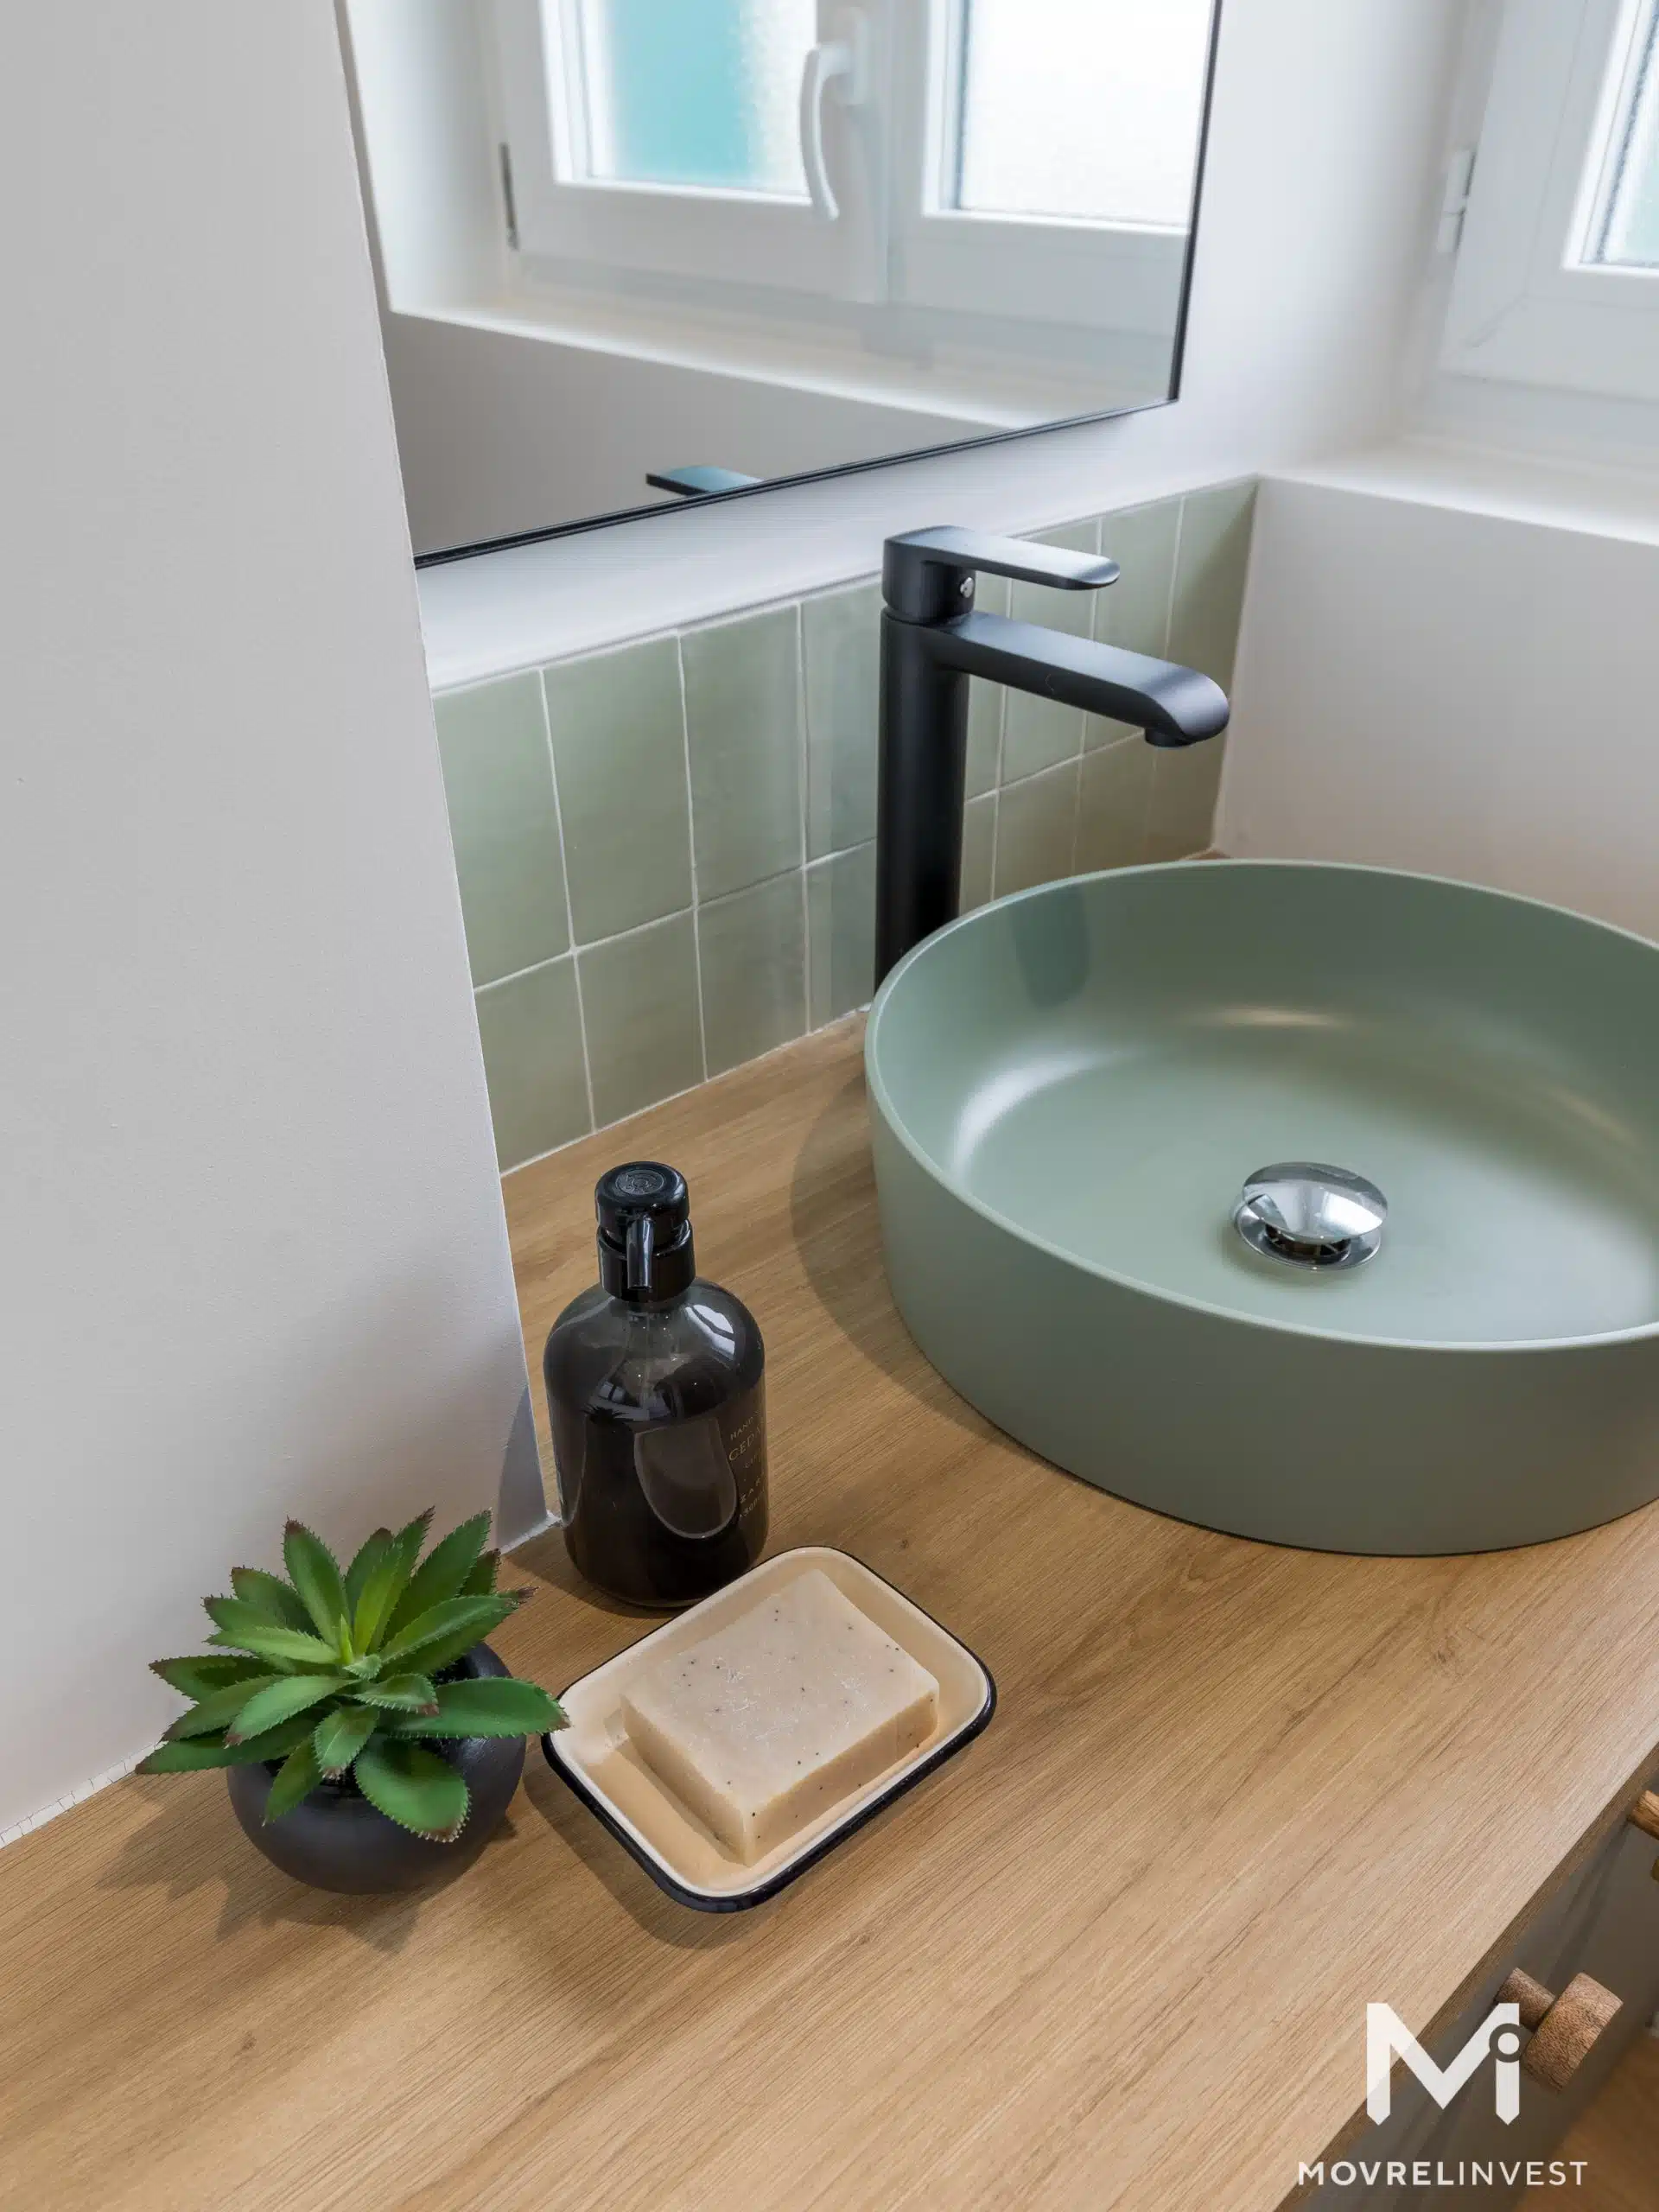 Salle de bain moderne avec vasque verte et robinet noir.